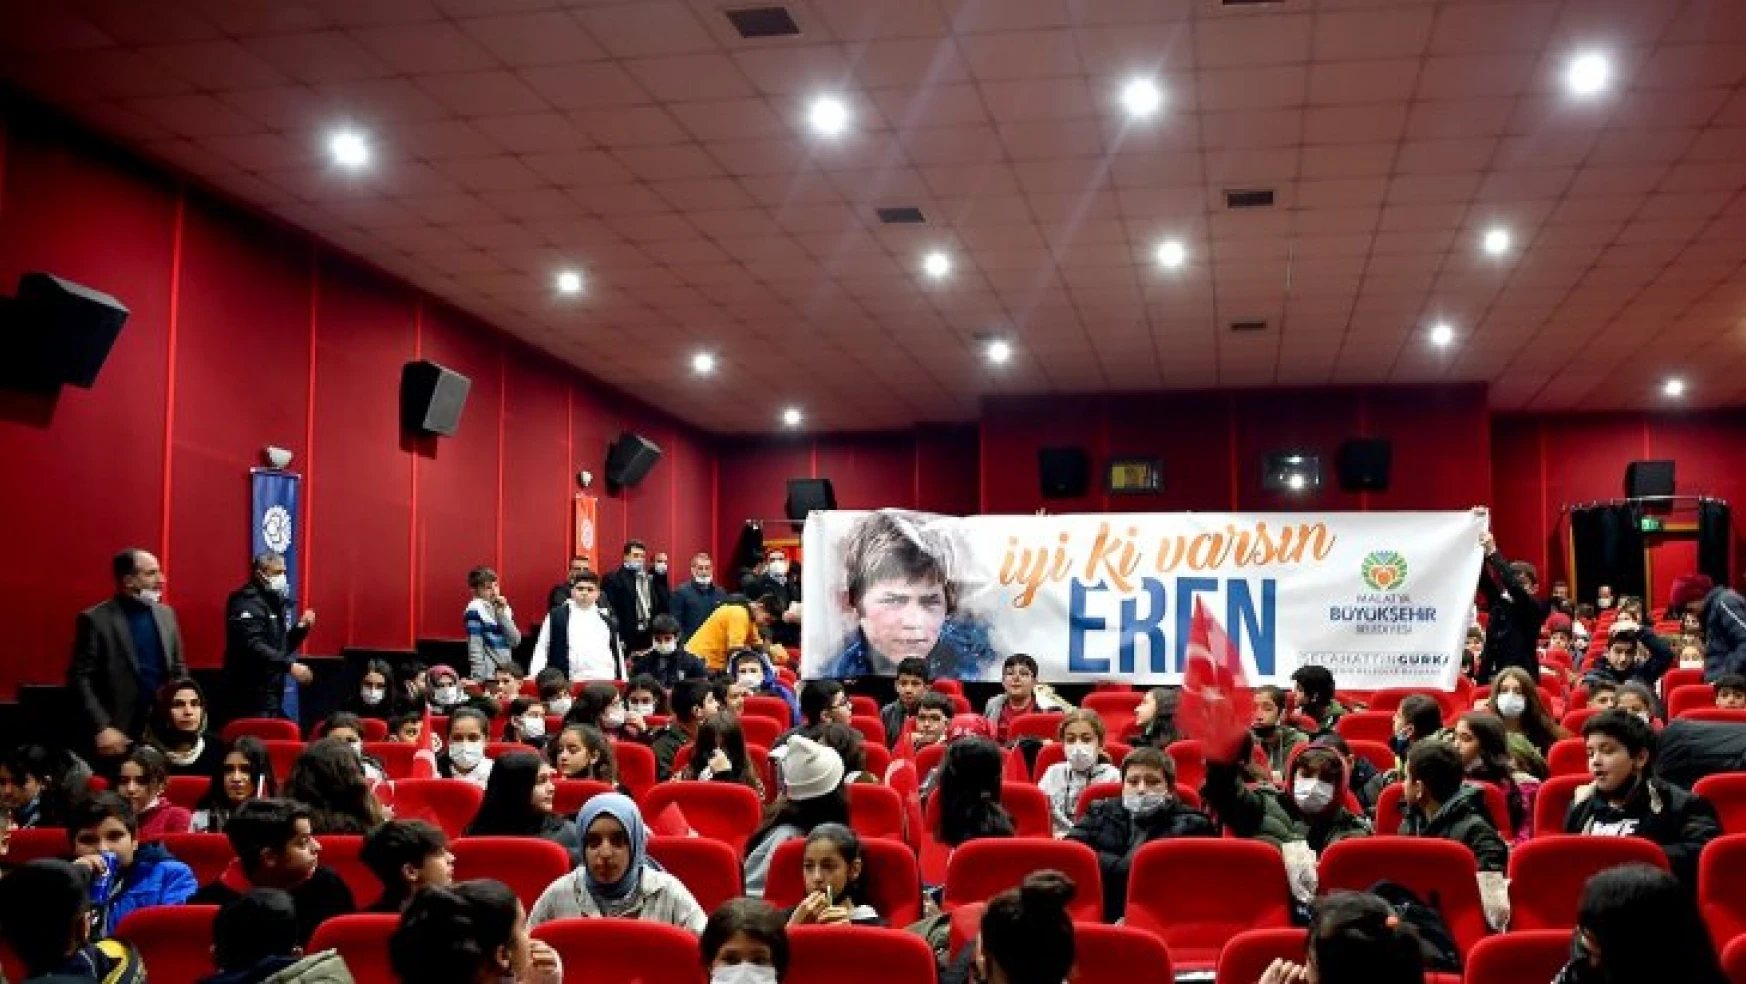 Malatya Büyükşehir Belediyesi Semt Konağı Öğrencileri 'Kesişme İyi Ki Varsın Eren' Filmini İzledi